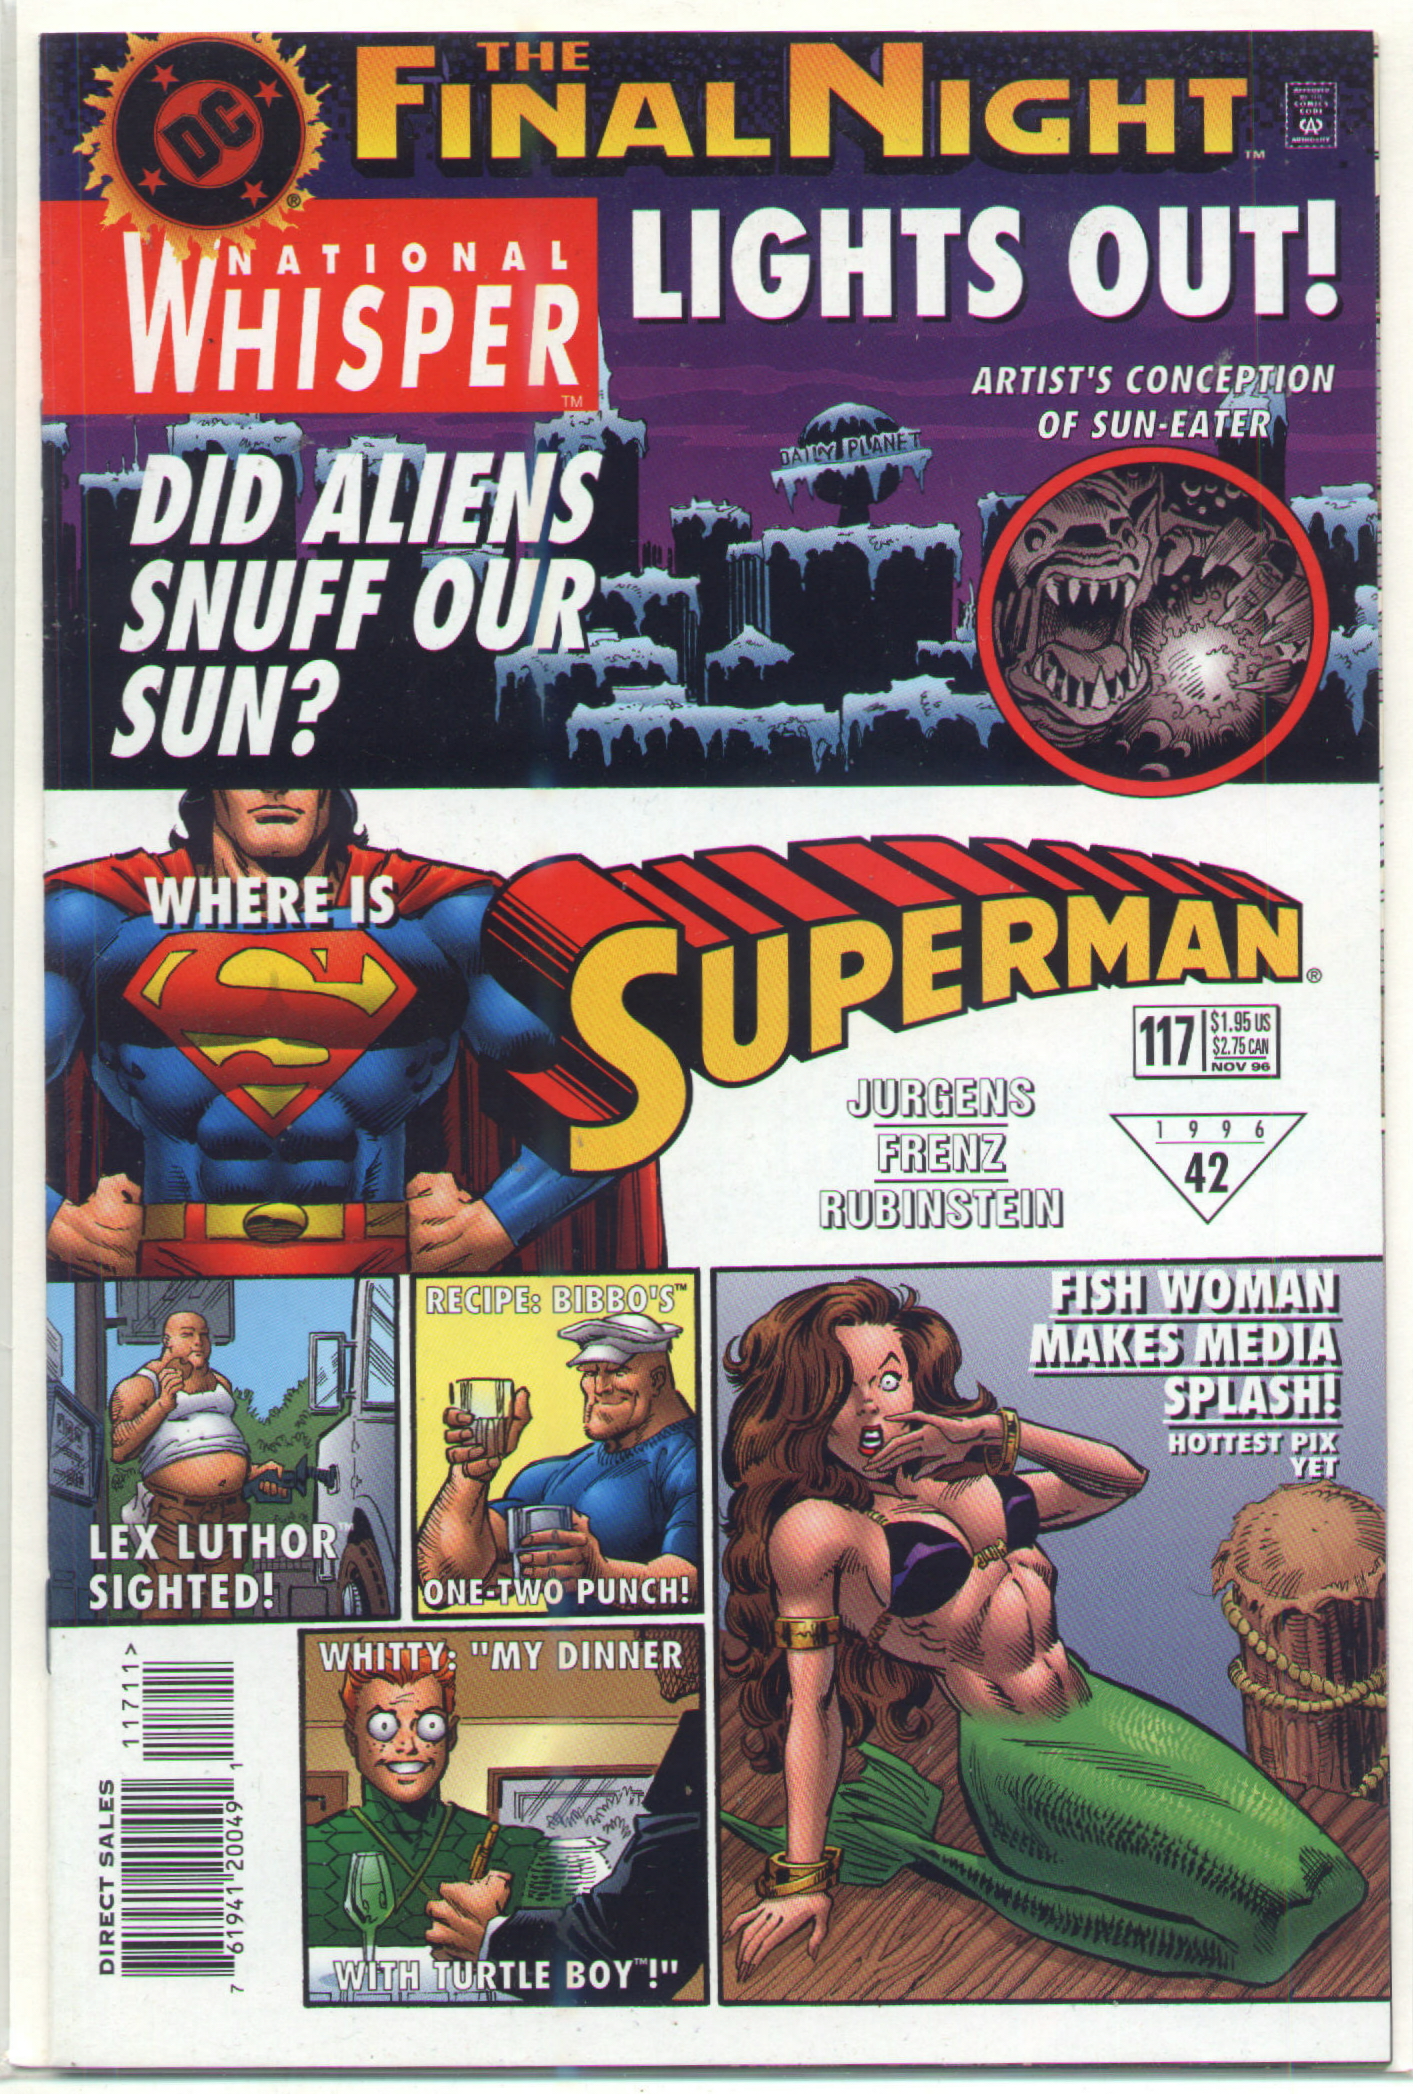 Superman Vol. 2 #117